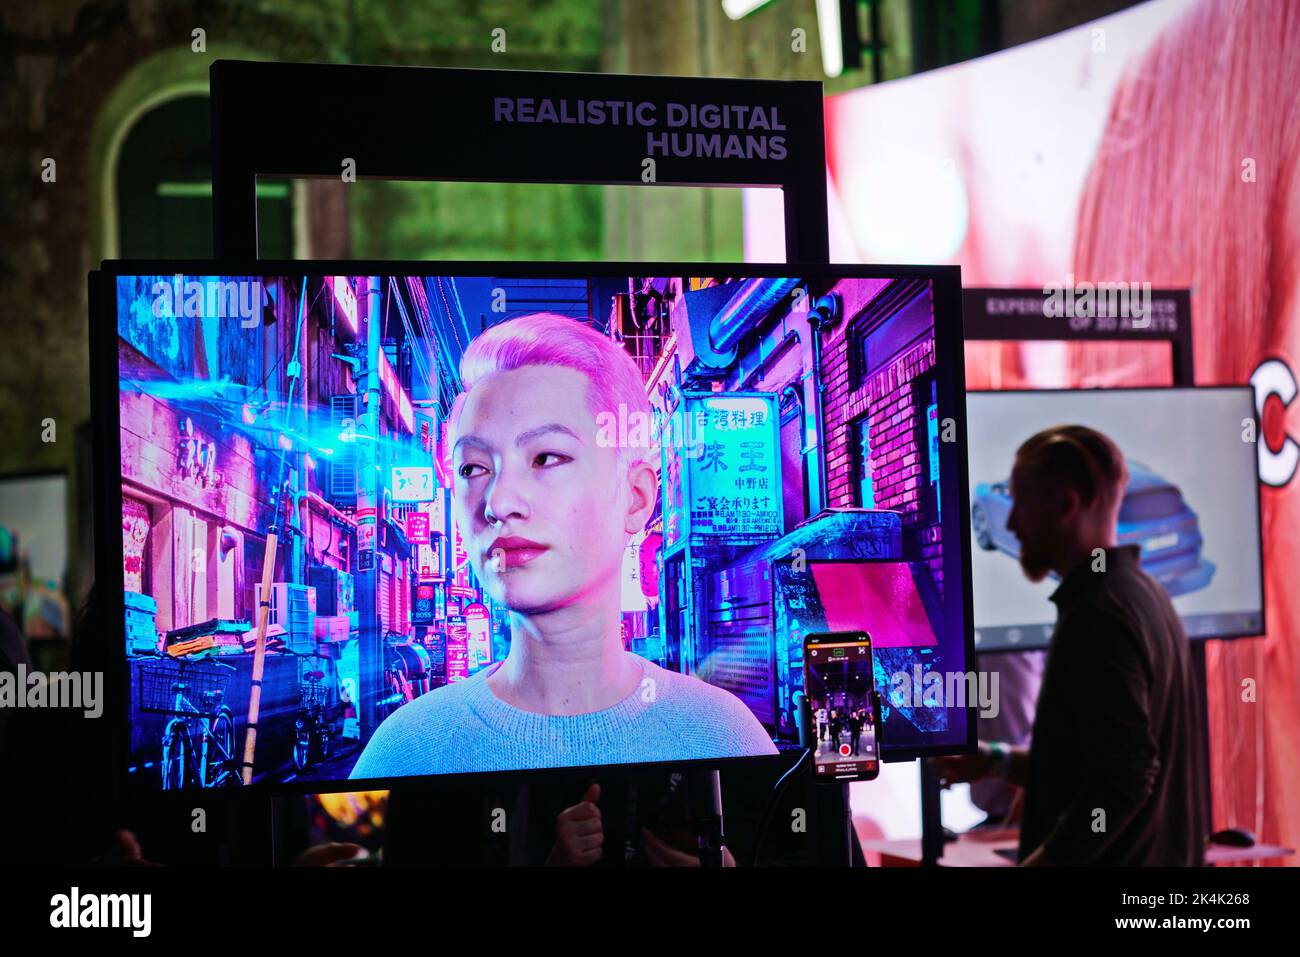 Mostra di realtà virtuale. Un monitor mostra il volto persone digitali iperrealistiche. Torino, Italia - Settembre 2022 Foto Stock